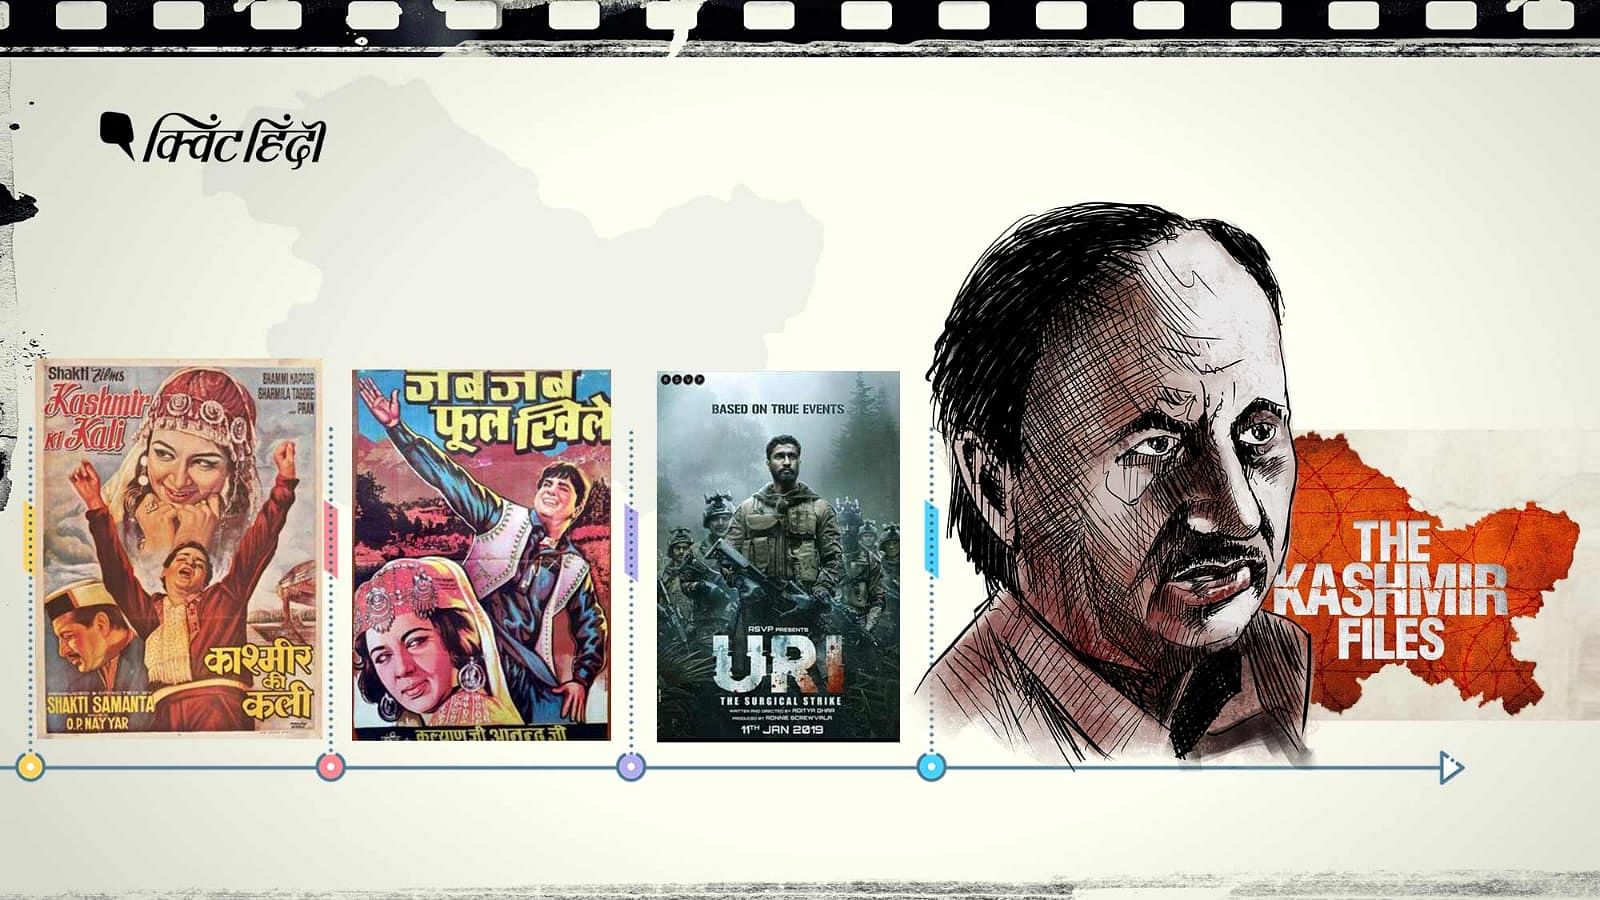 <div class="paragraphs"><p>'कश्मीर की कली' से 'द कश्मीर फाइल्स' तक - फिल्मों में कश्मीर की बदलती कहानी</p></div>